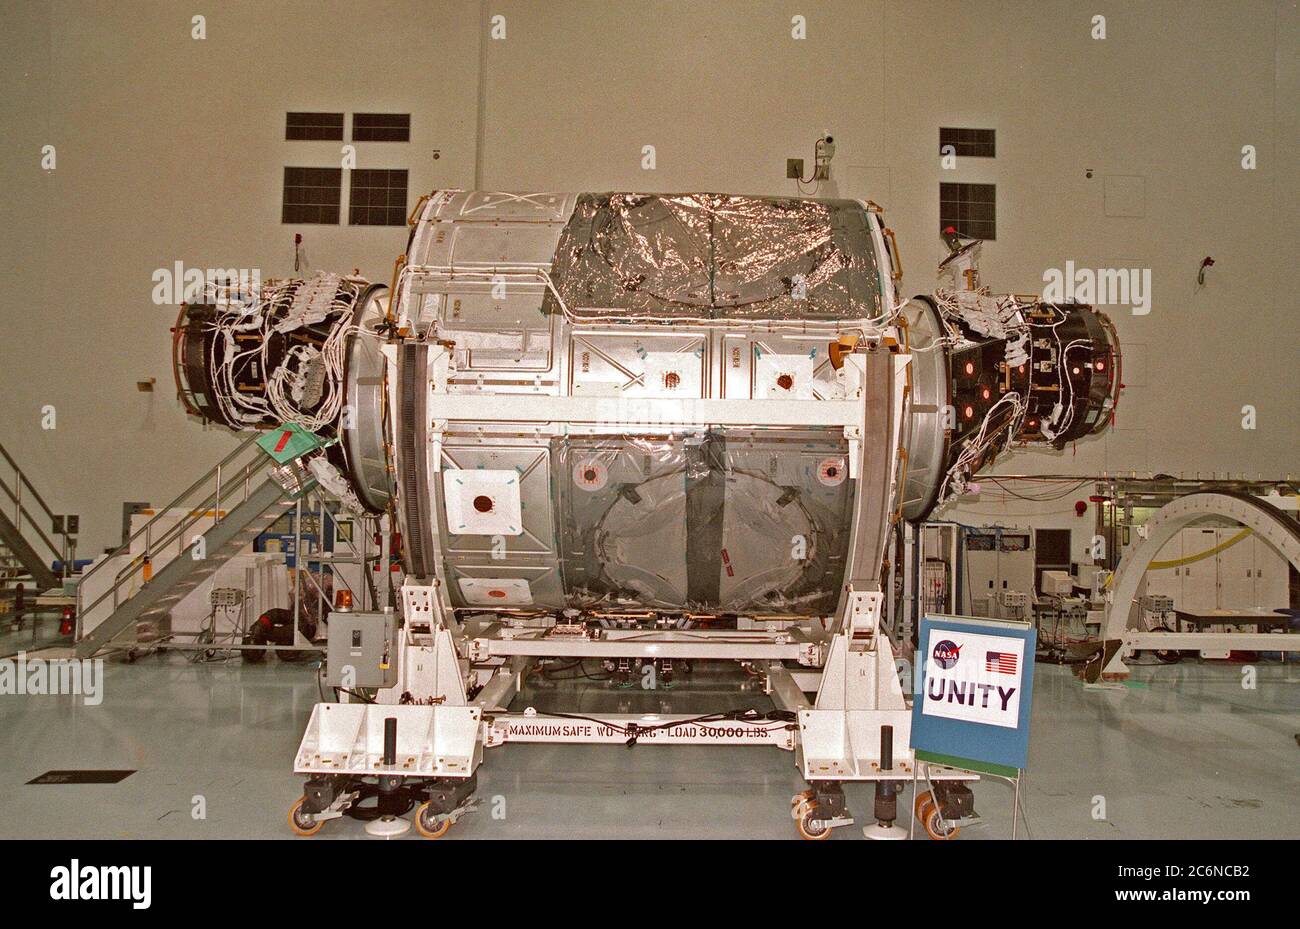 In der Raumstation Processing Facility (SSPF) sitzt das Verbindungsmodul Unity, Teil der Internationalen Raumstation, auf einem Arbeitsstand, bevor es an einen neuen Ort im SSPF umzieht. Als primäre Nutzlast auf der Mission STS-88, die am 3. Dezember 1998 starten soll, wird Unity mit dem russischen Steuermodul Zarya verbunden, das zu diesem Zeitpunkt bereits im Orbit sein sollte. Stockfoto